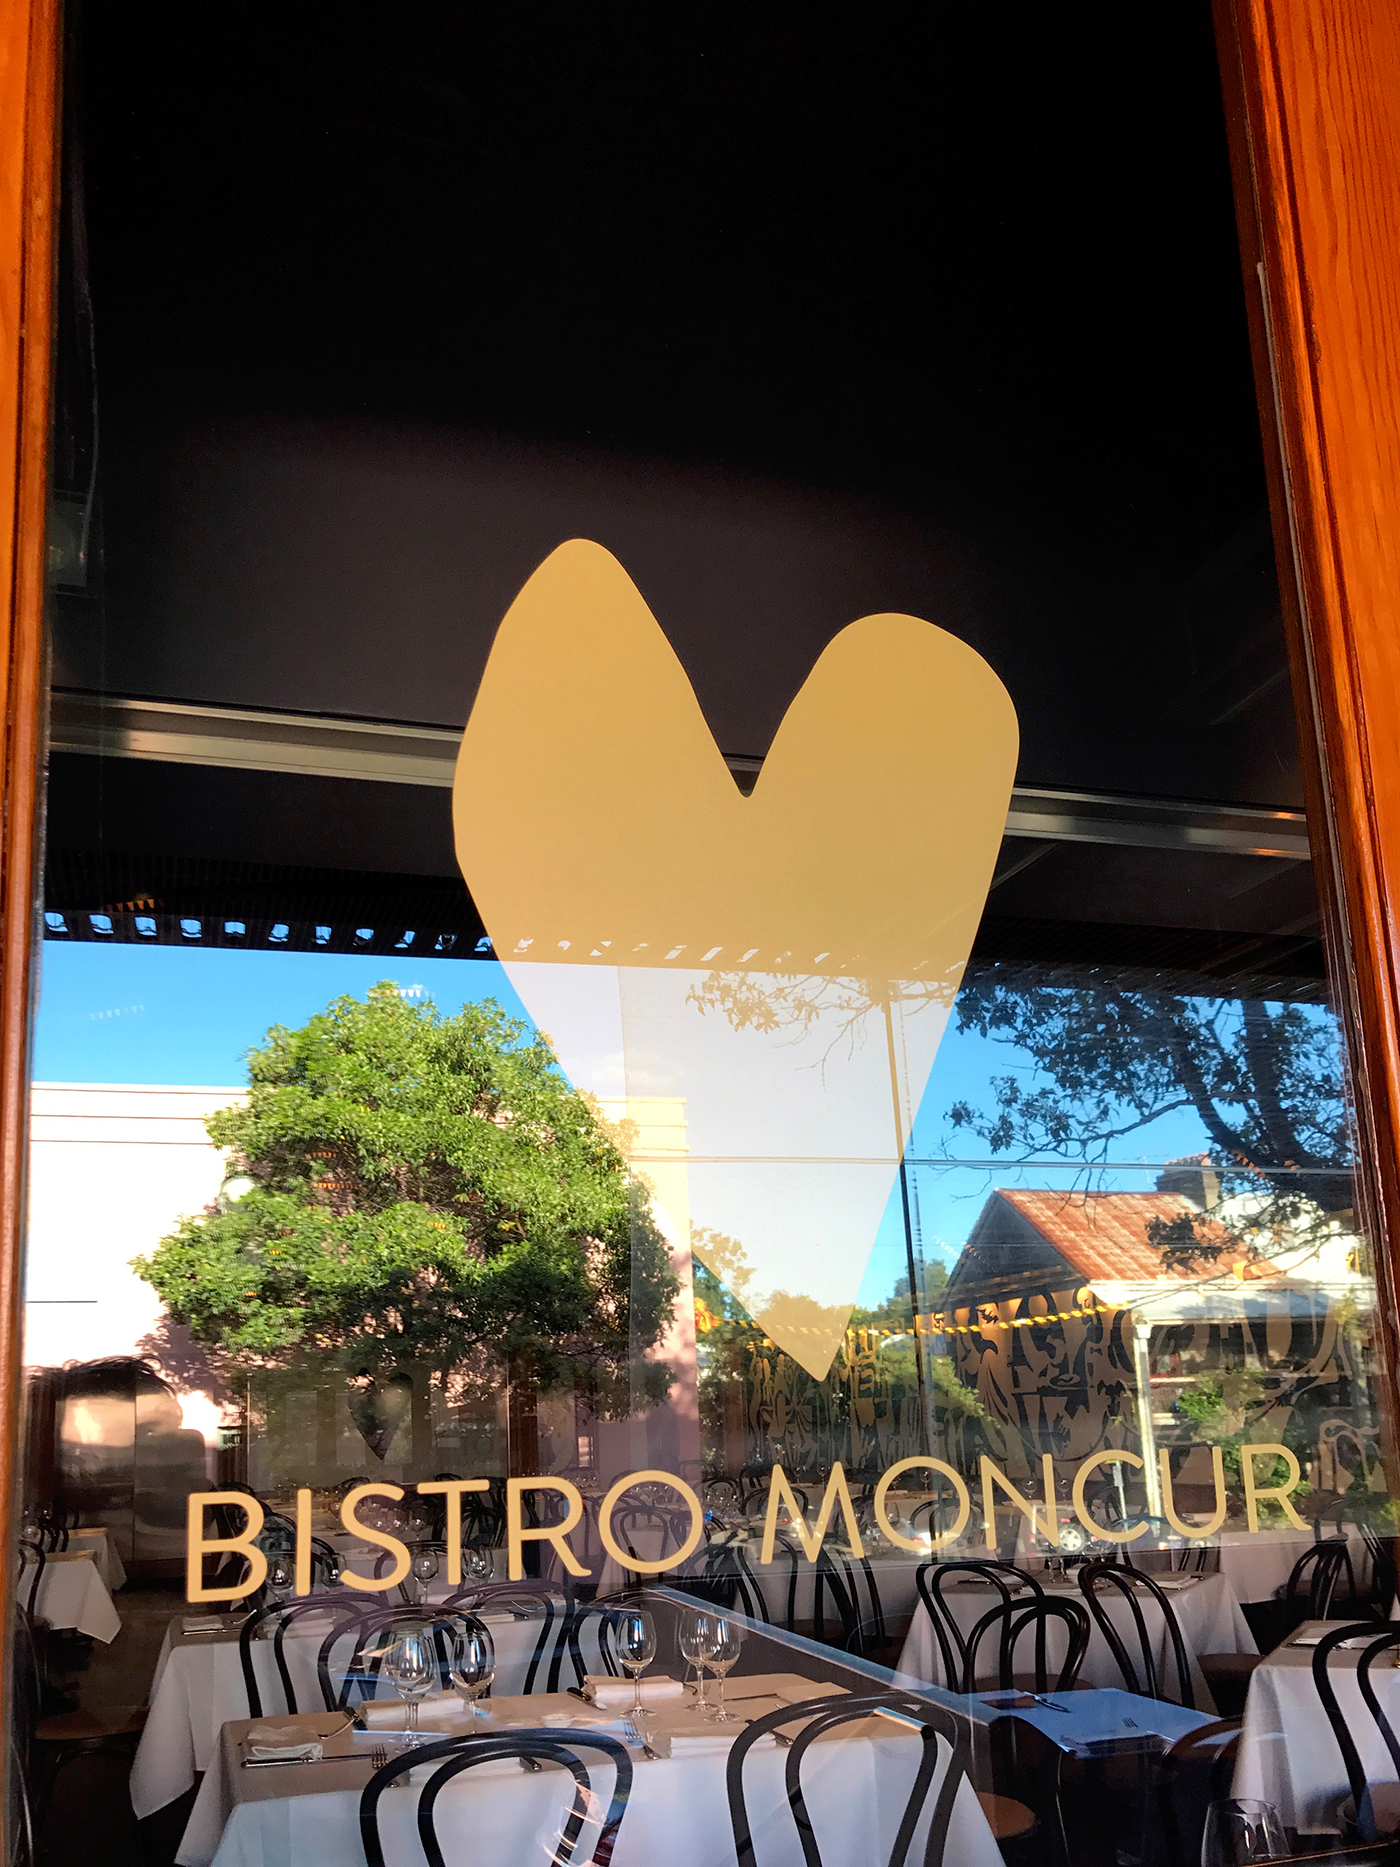 Moncur bistro Woollahra Signage